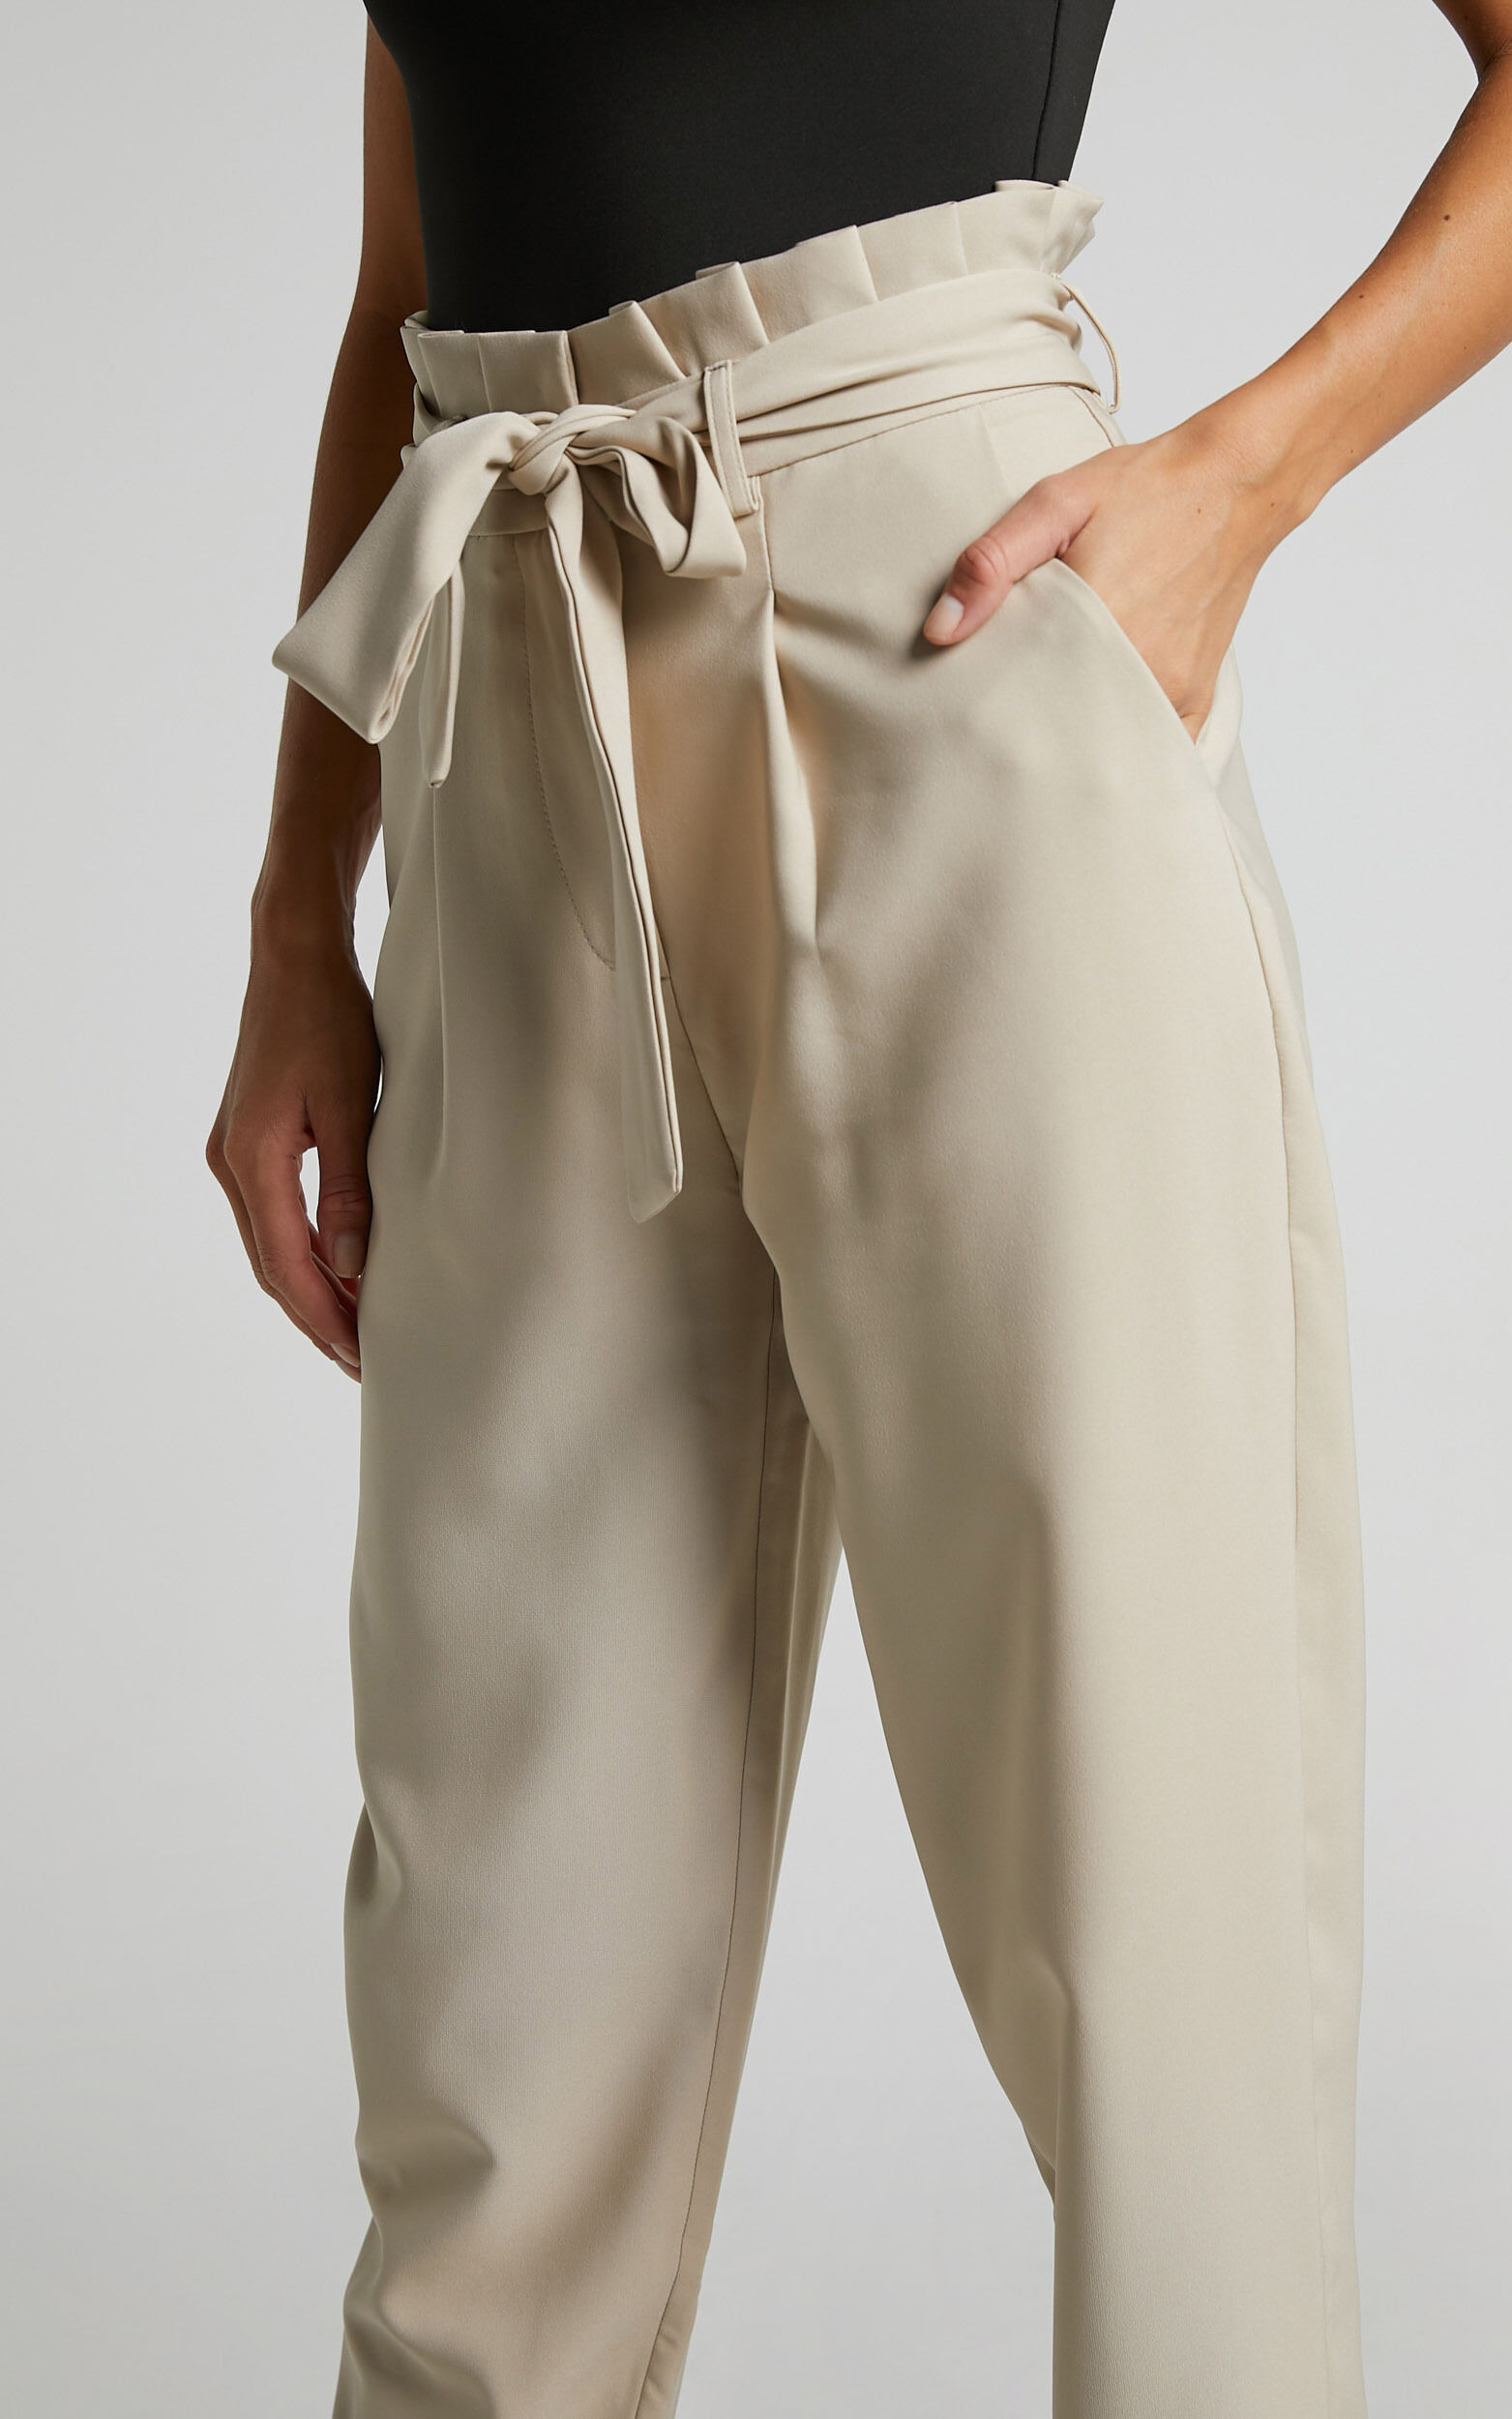 Paperbag Waist Belted Ankle Tie Beige Pant  Beige pants, Sleek fashion,  Paperbag pants